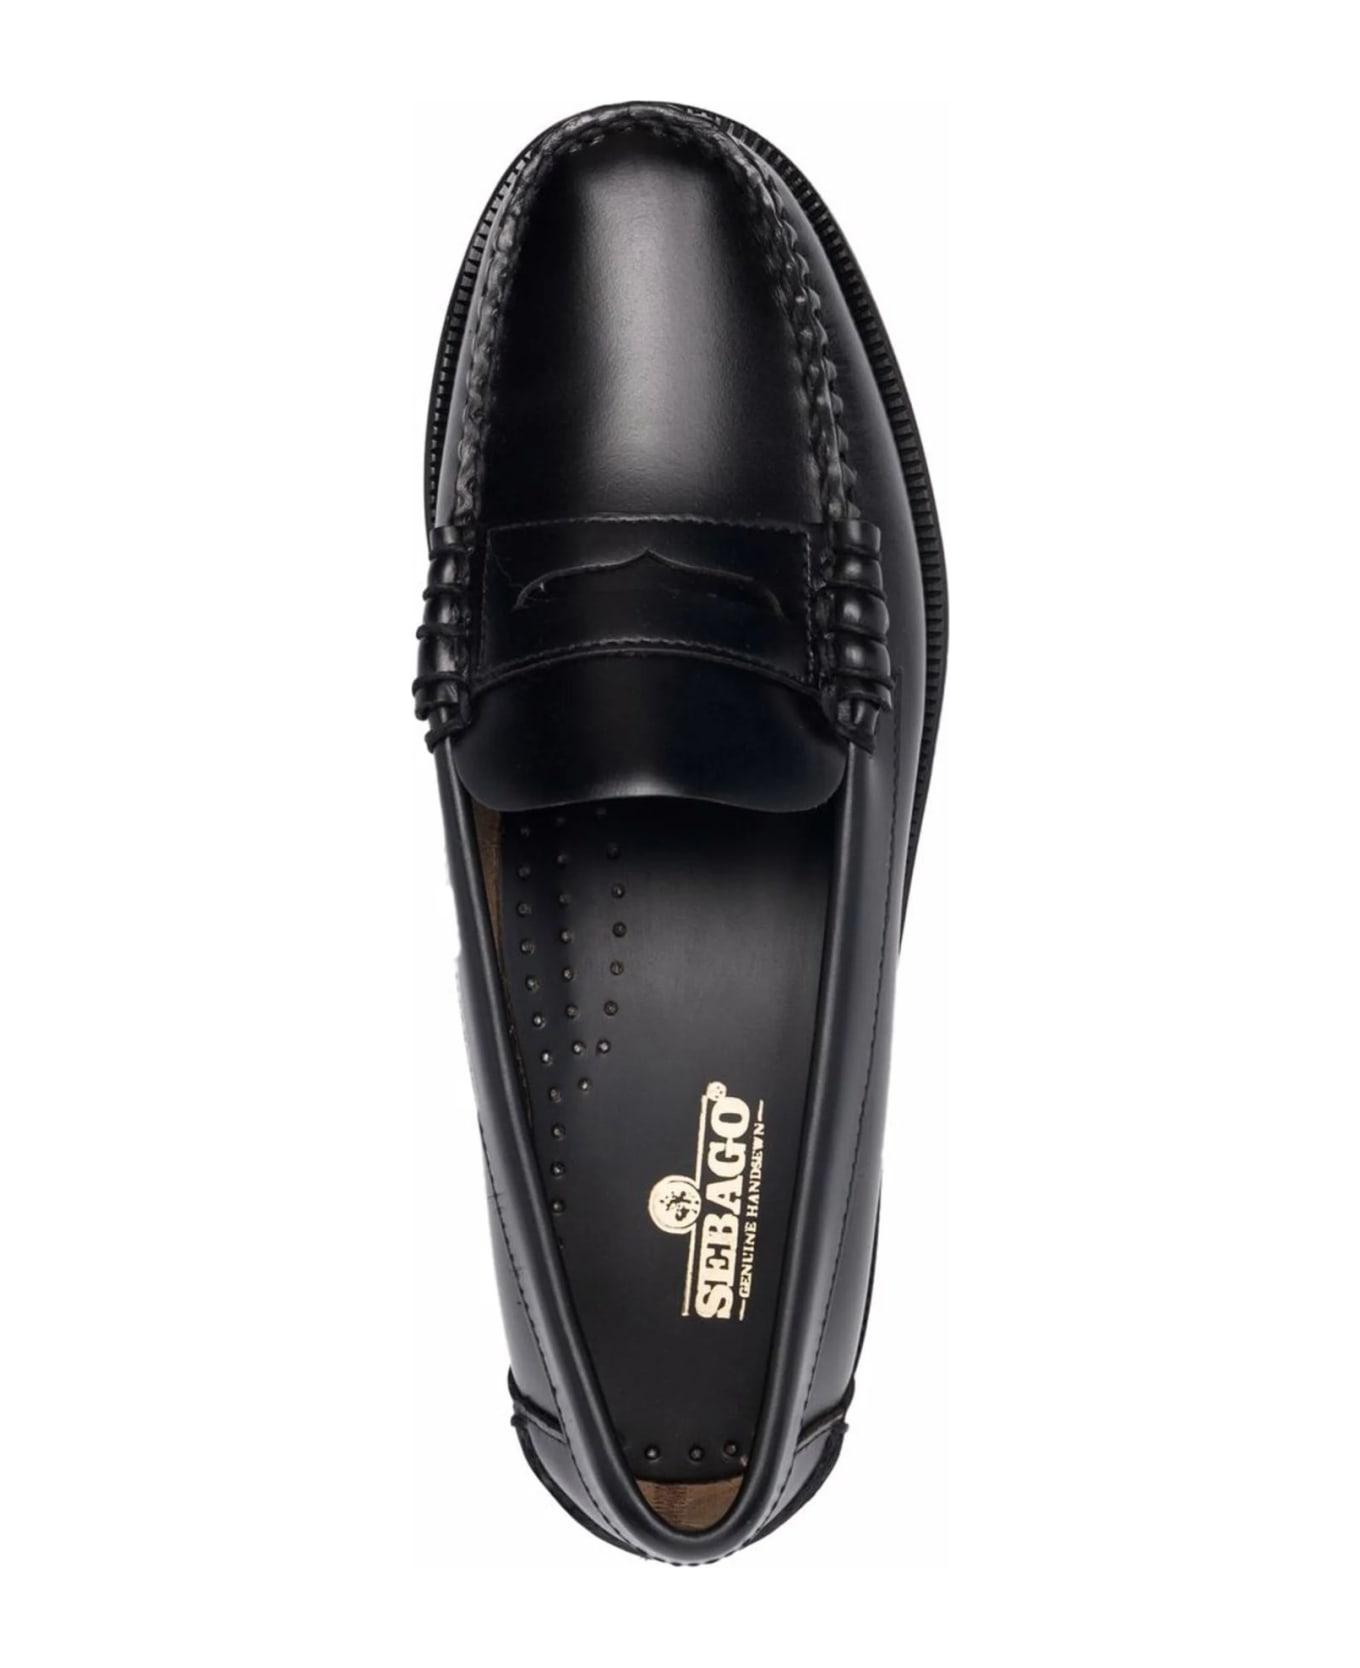 Sebago Black Leather Loafers - Black